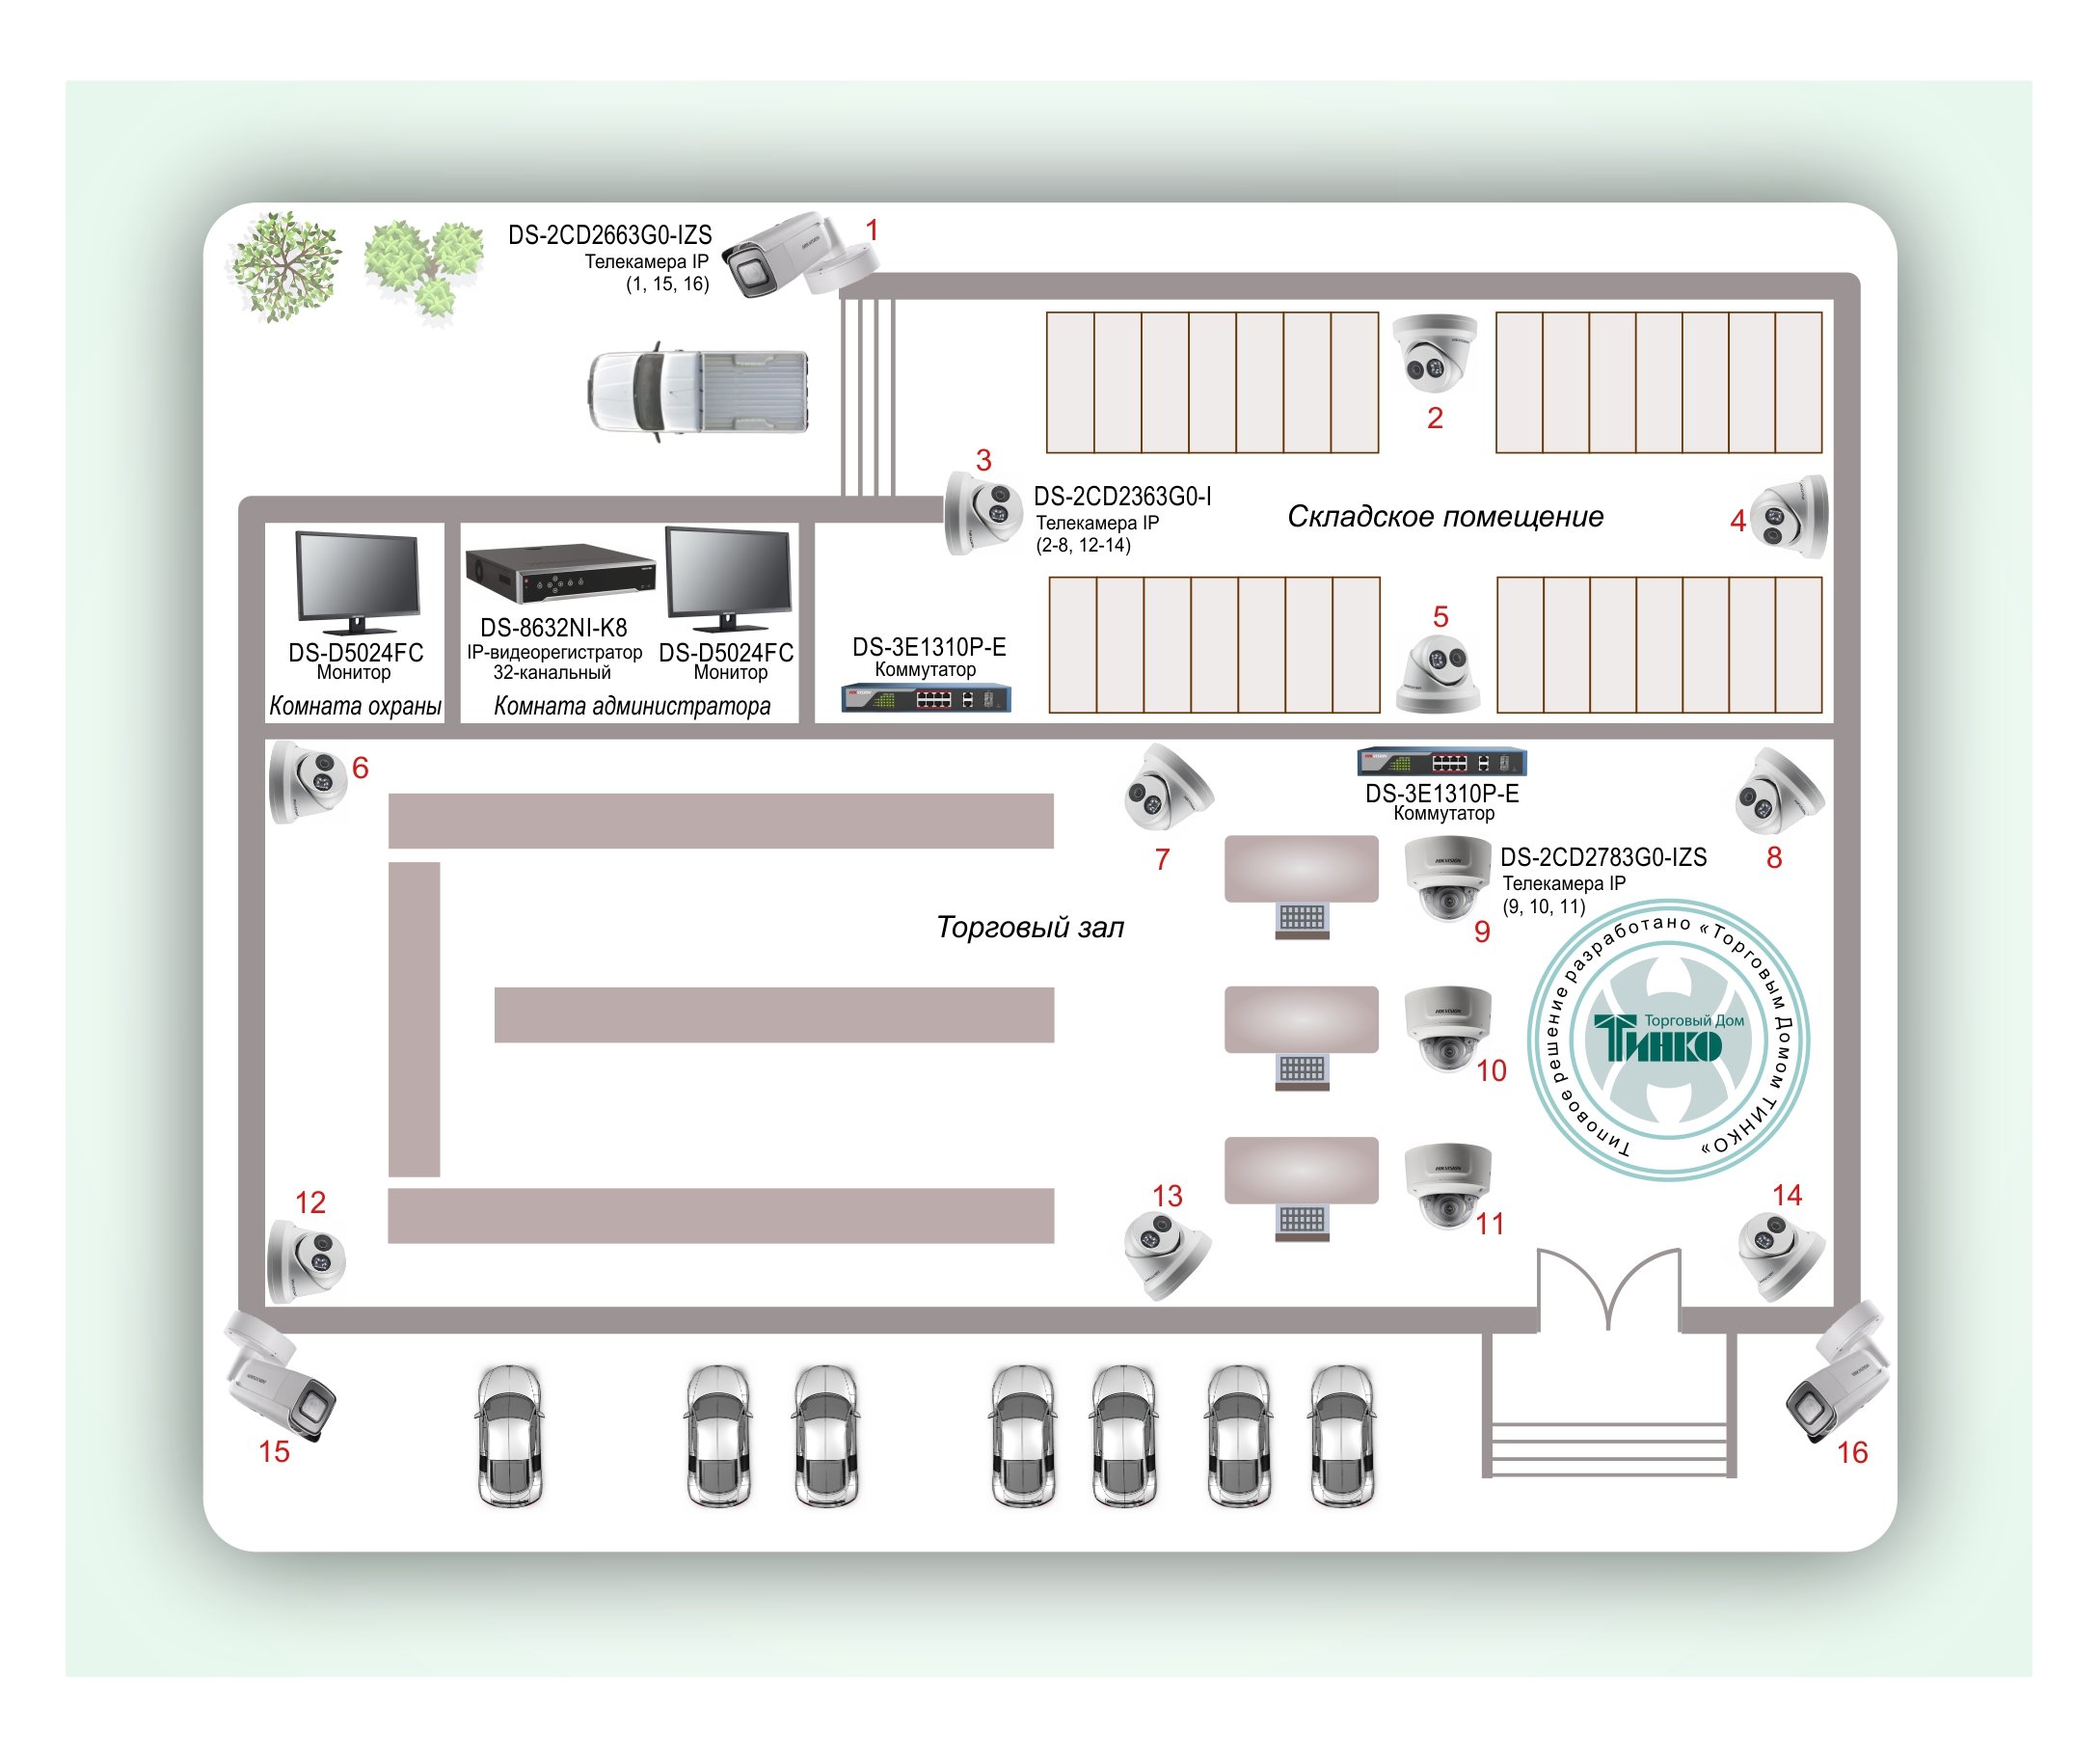 ТСН-017: Система видеонаблюдения для торгового центра с контролем за зонами входа/выхода, разгрузкой/погрузкой и прилегающей парковкой